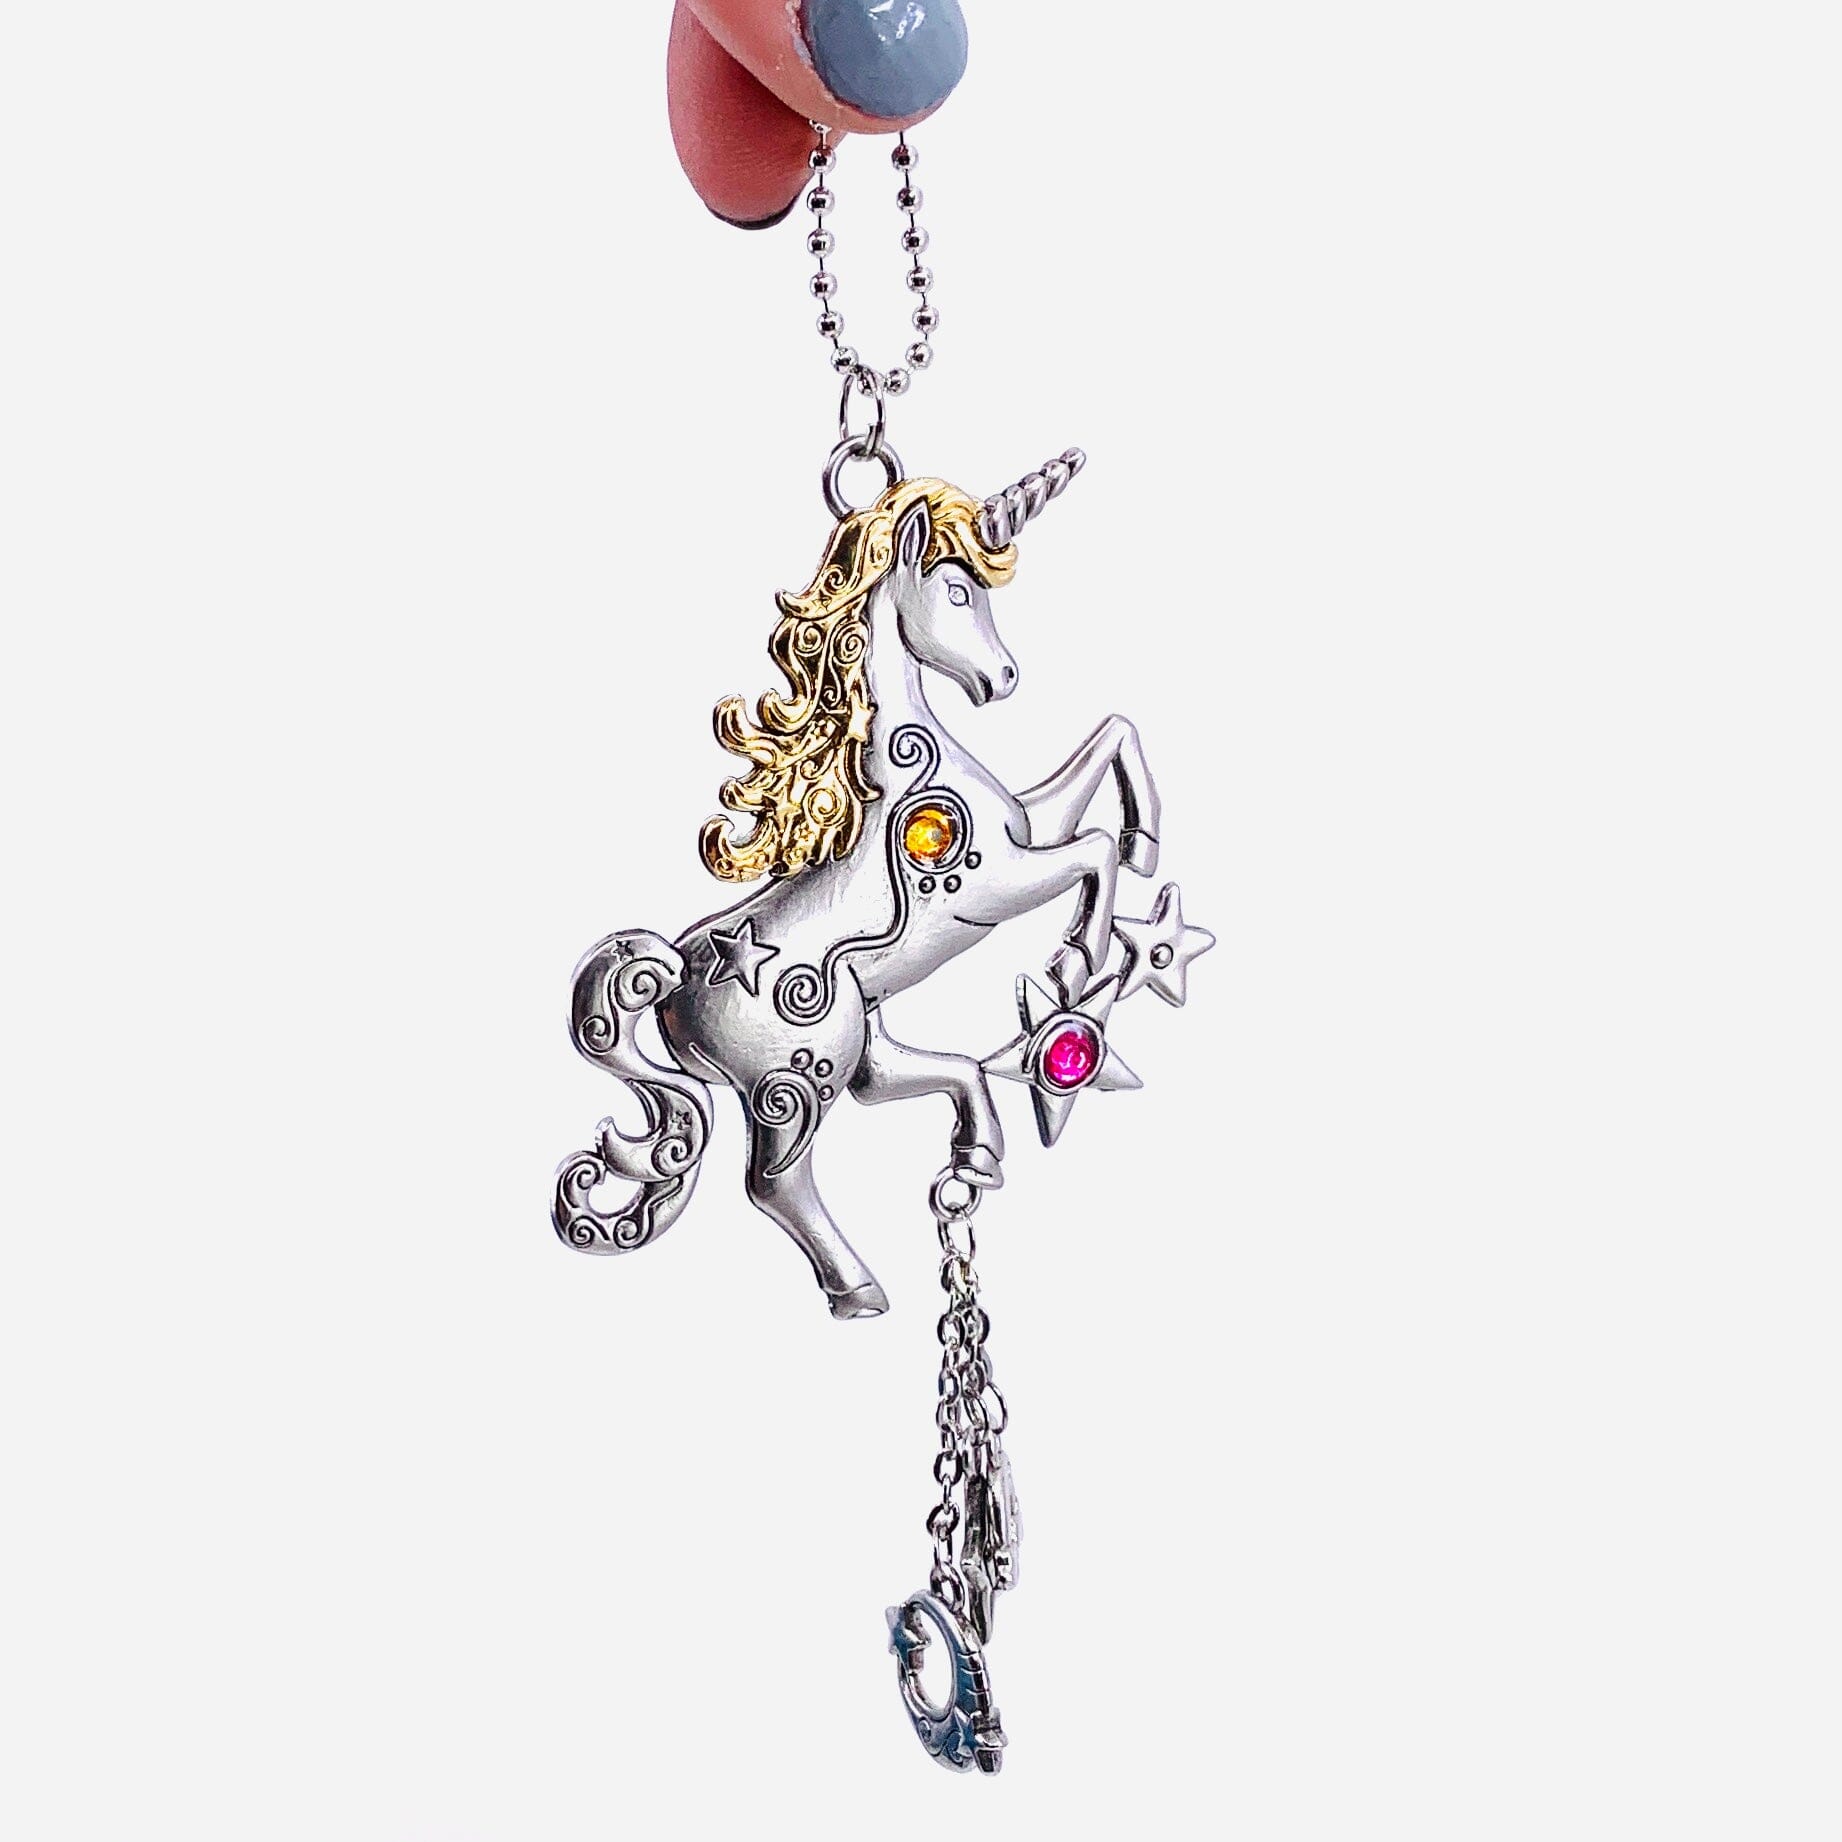 Unicorn Car Charm Ornament GANZ 